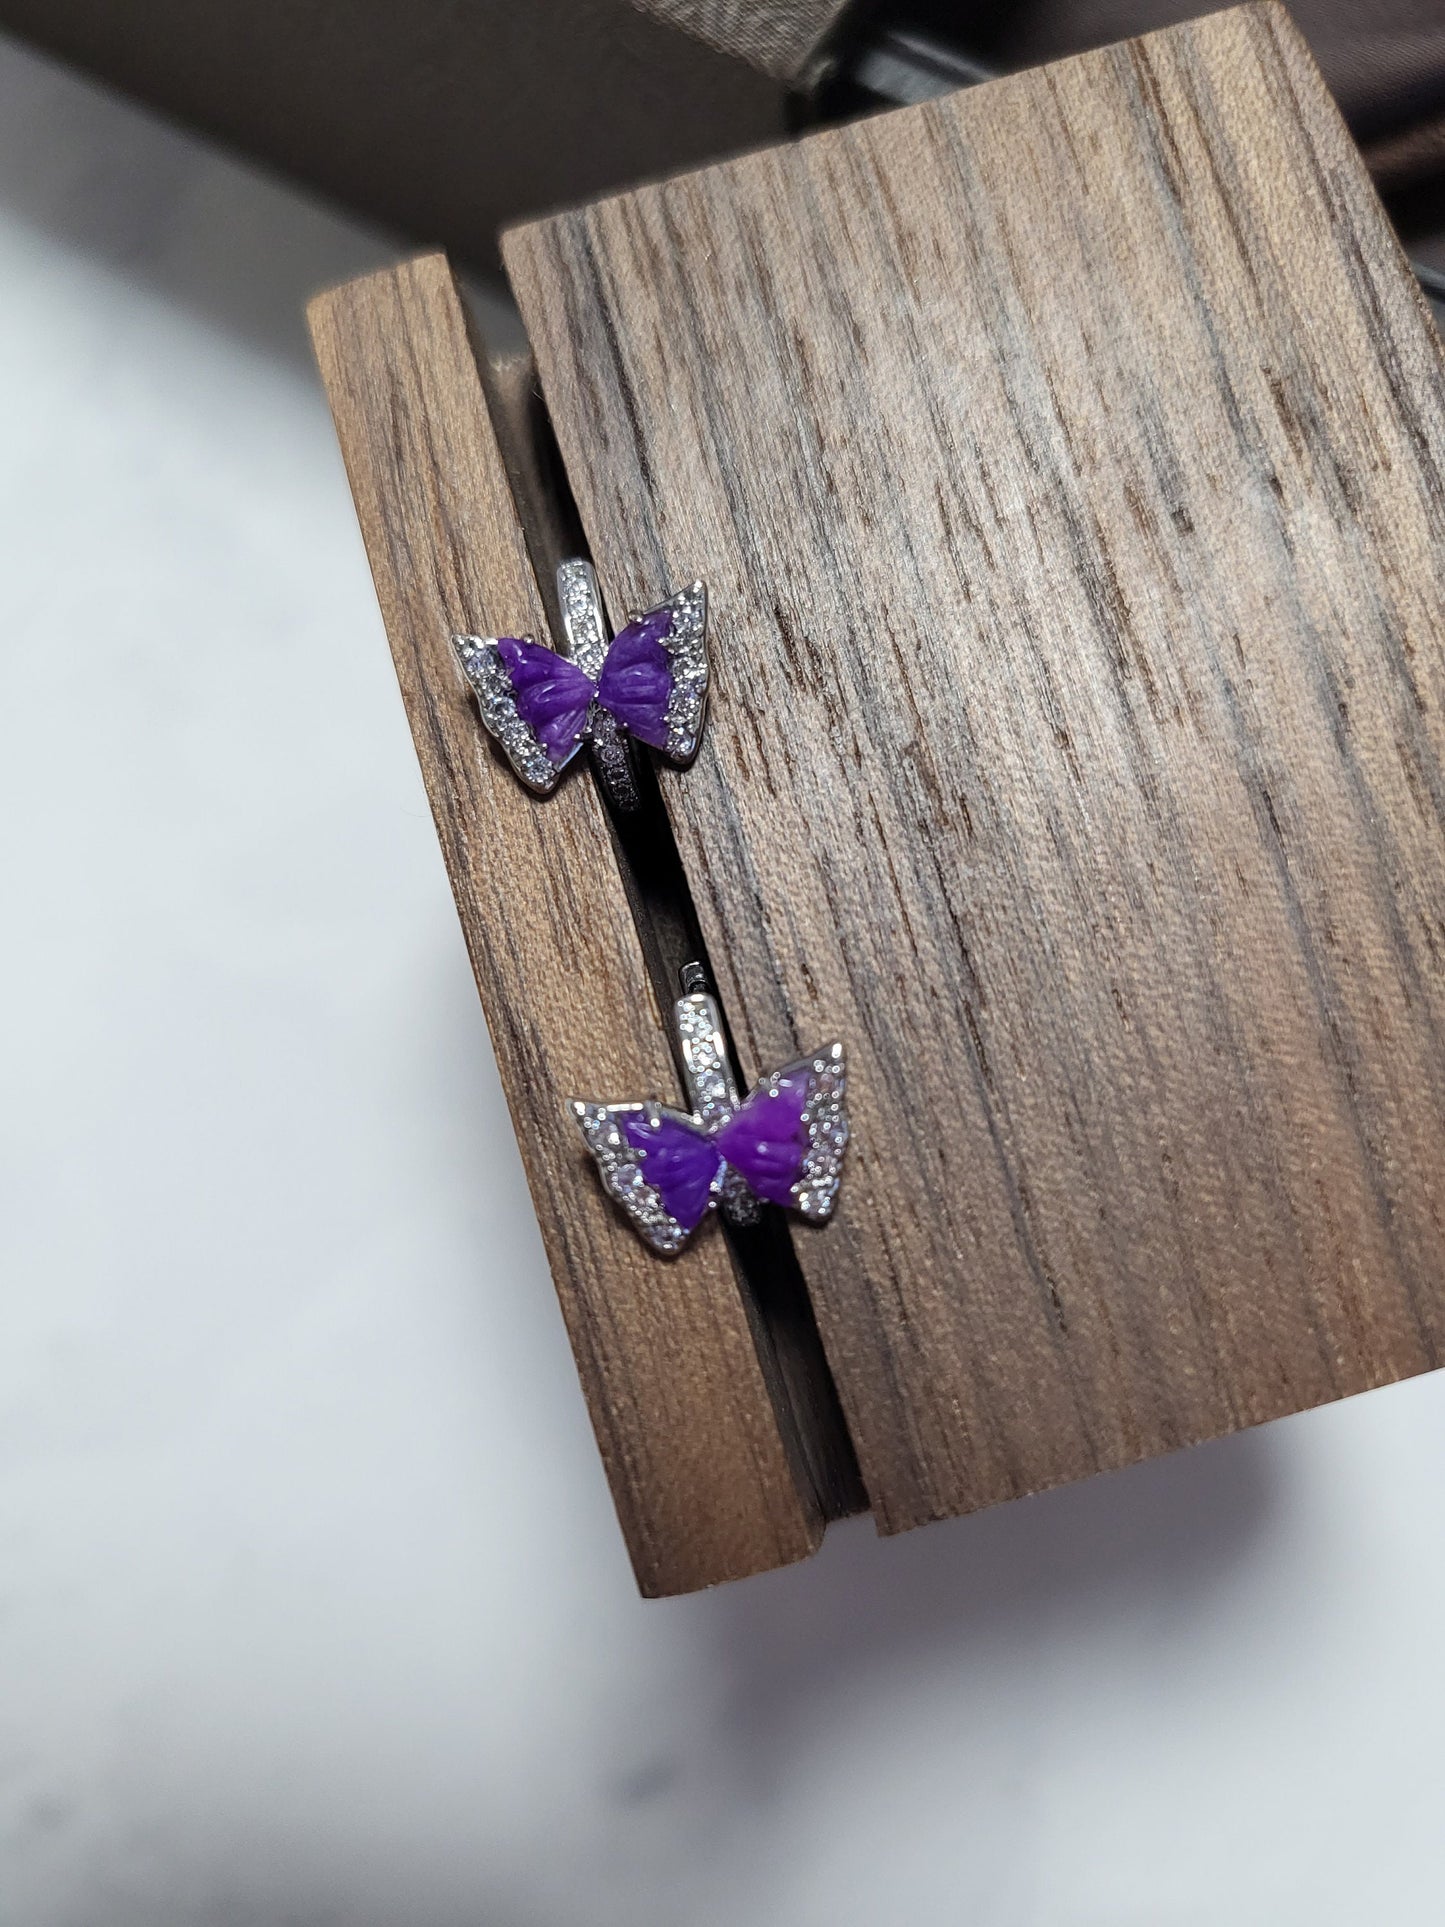 Rare Sugilite Earrings Gel Natural Gemstone Purple Silver Hoop Earrings Butterfly Carving with Crystals